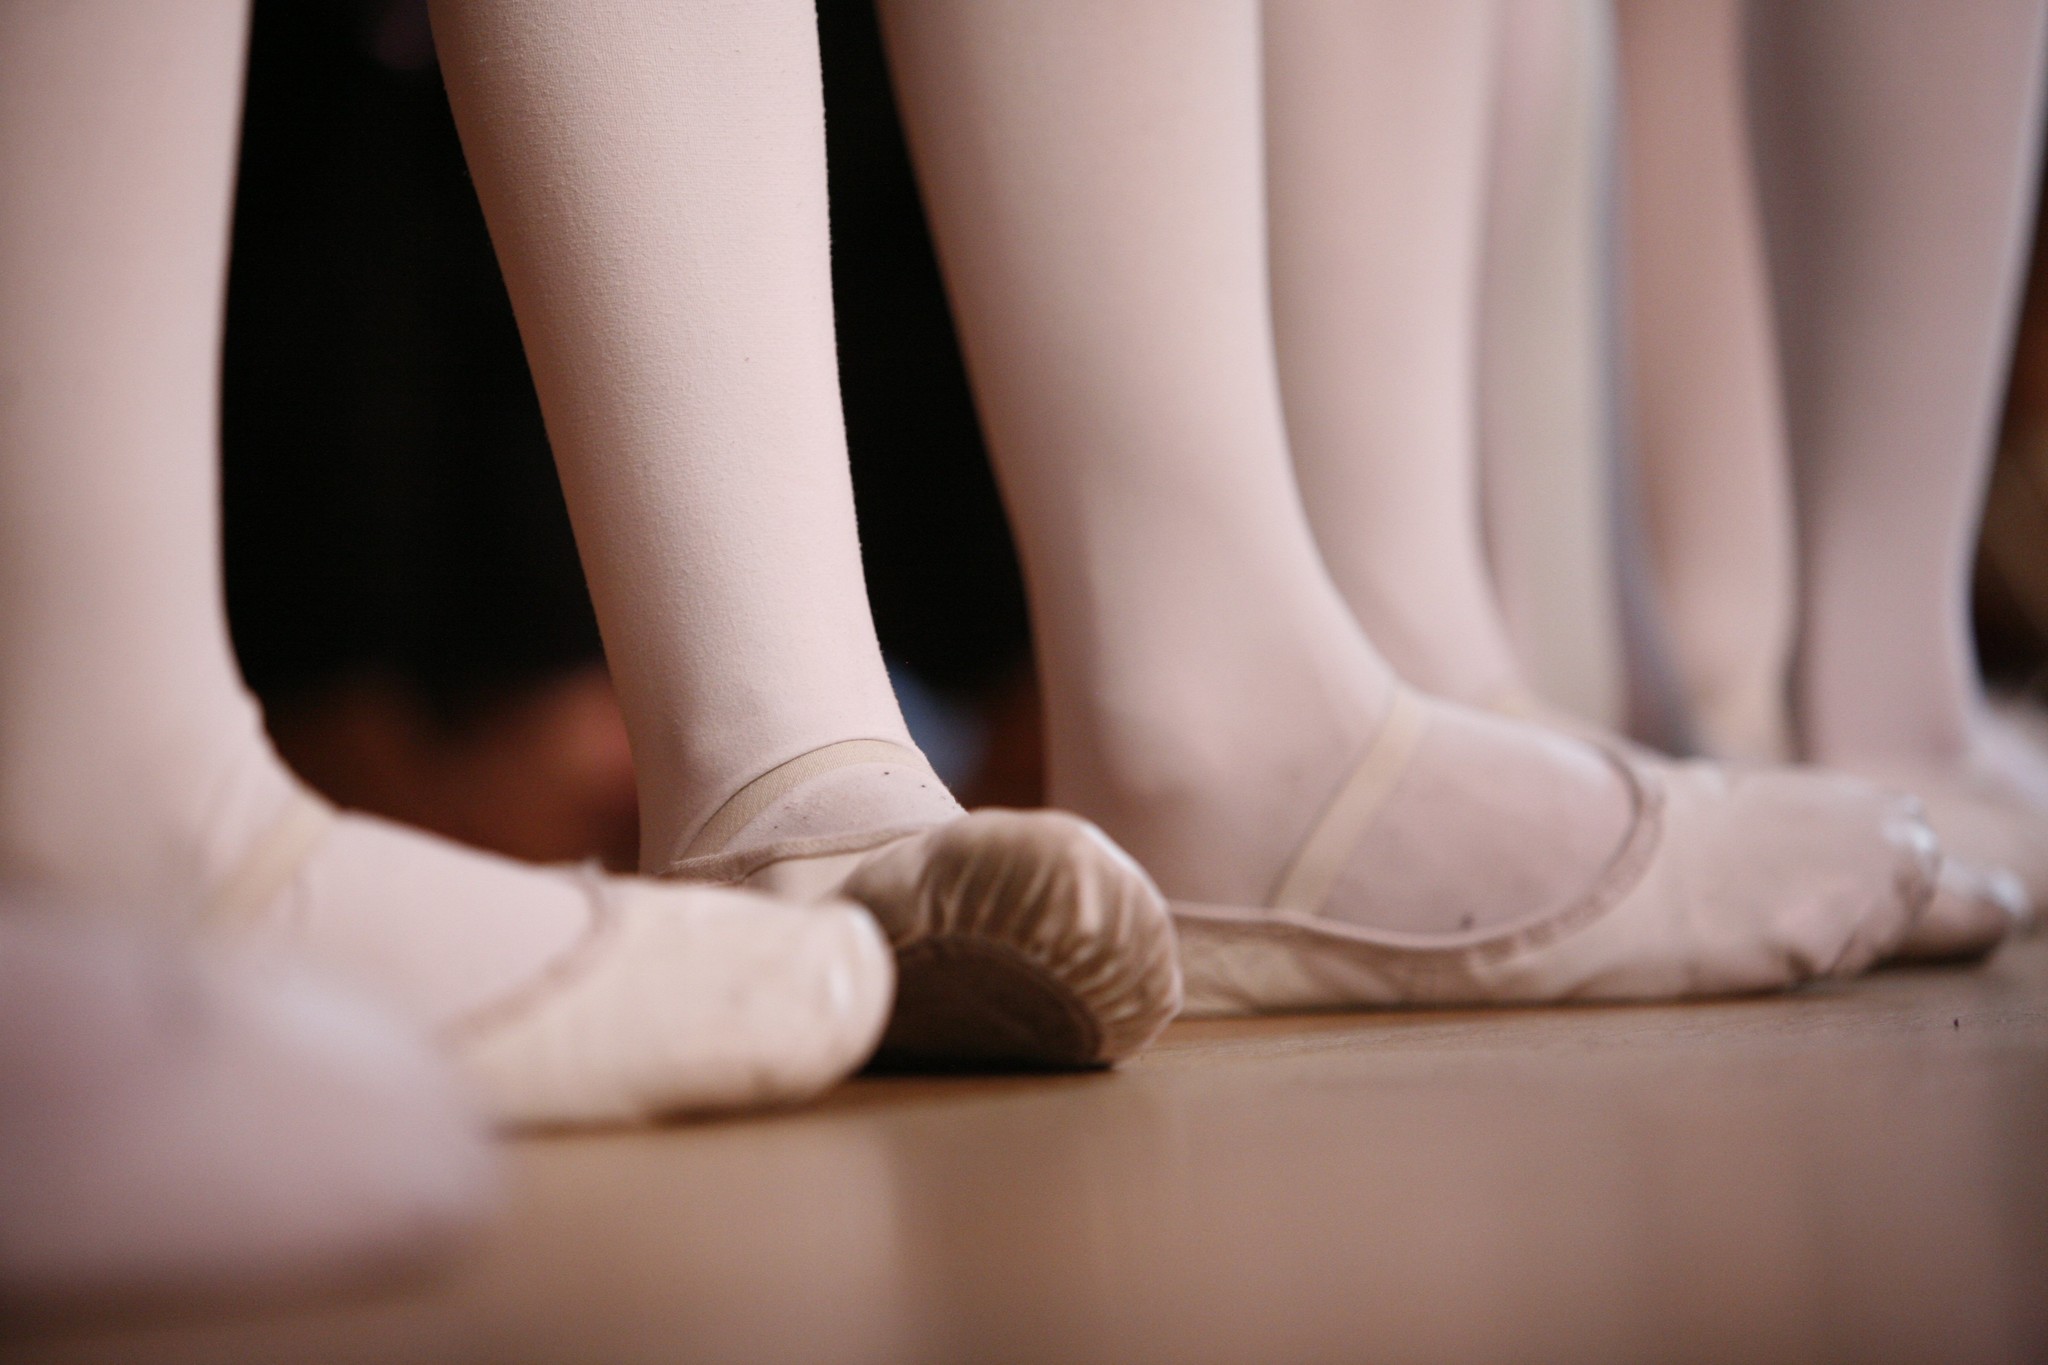 Ballet classique / Demi-Pointes - Orya par Virevolte